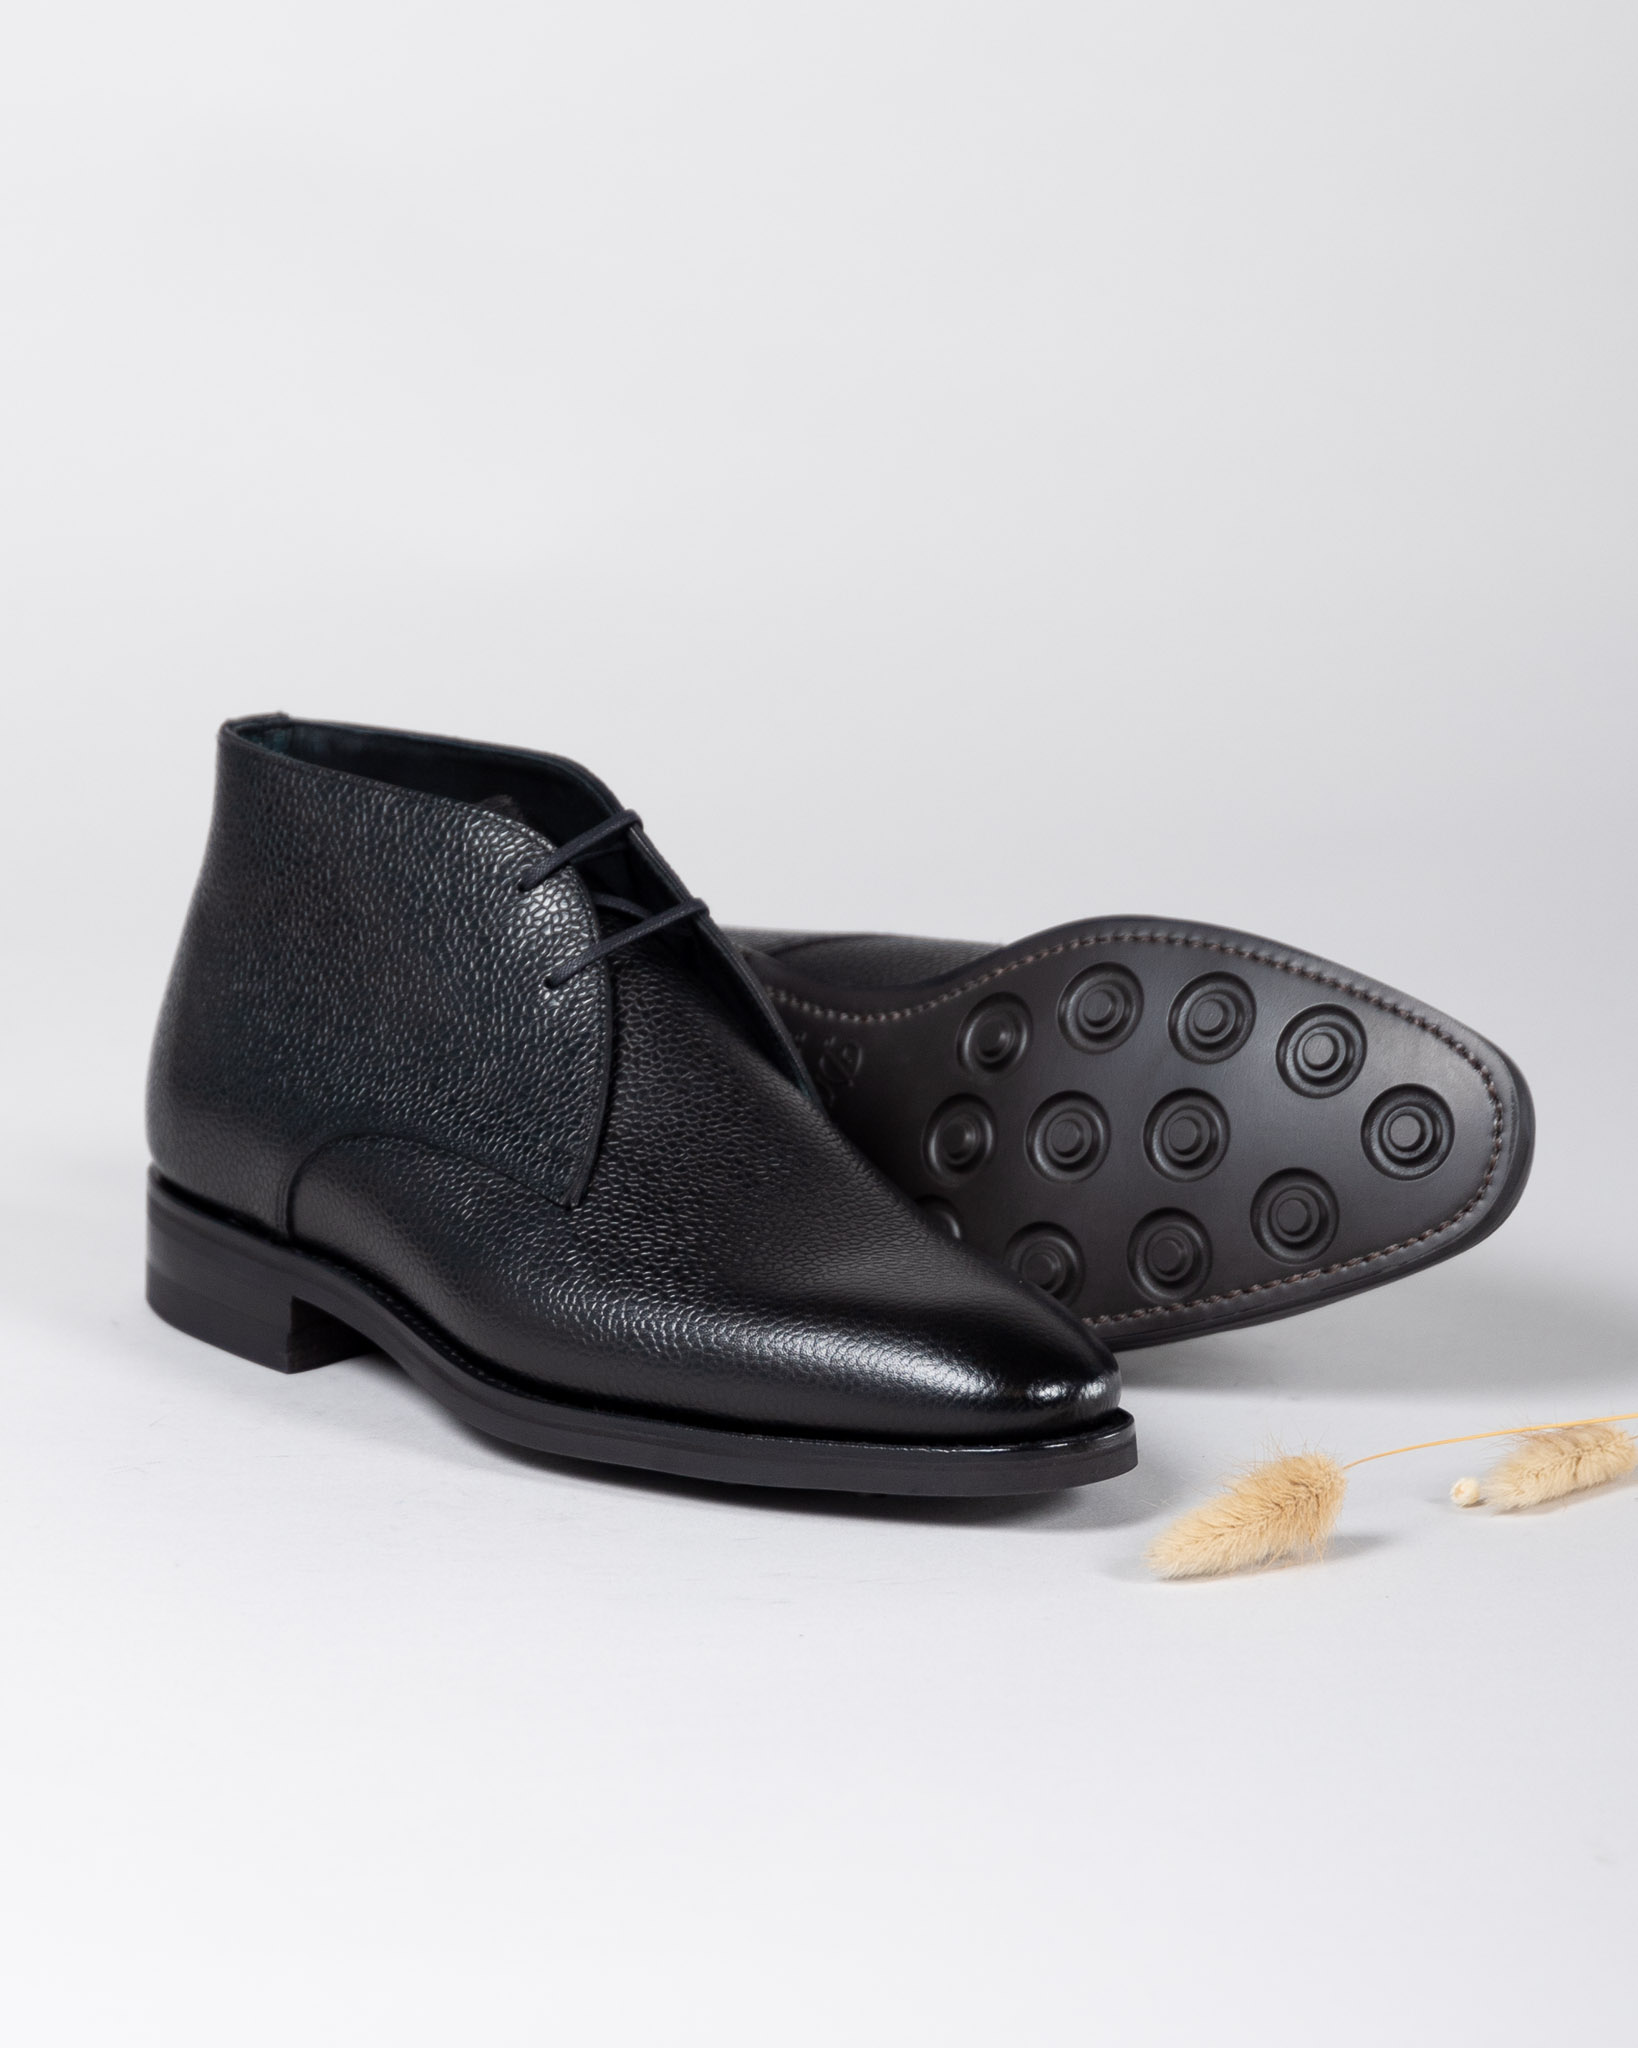 Chukka Boot - Grain Leather